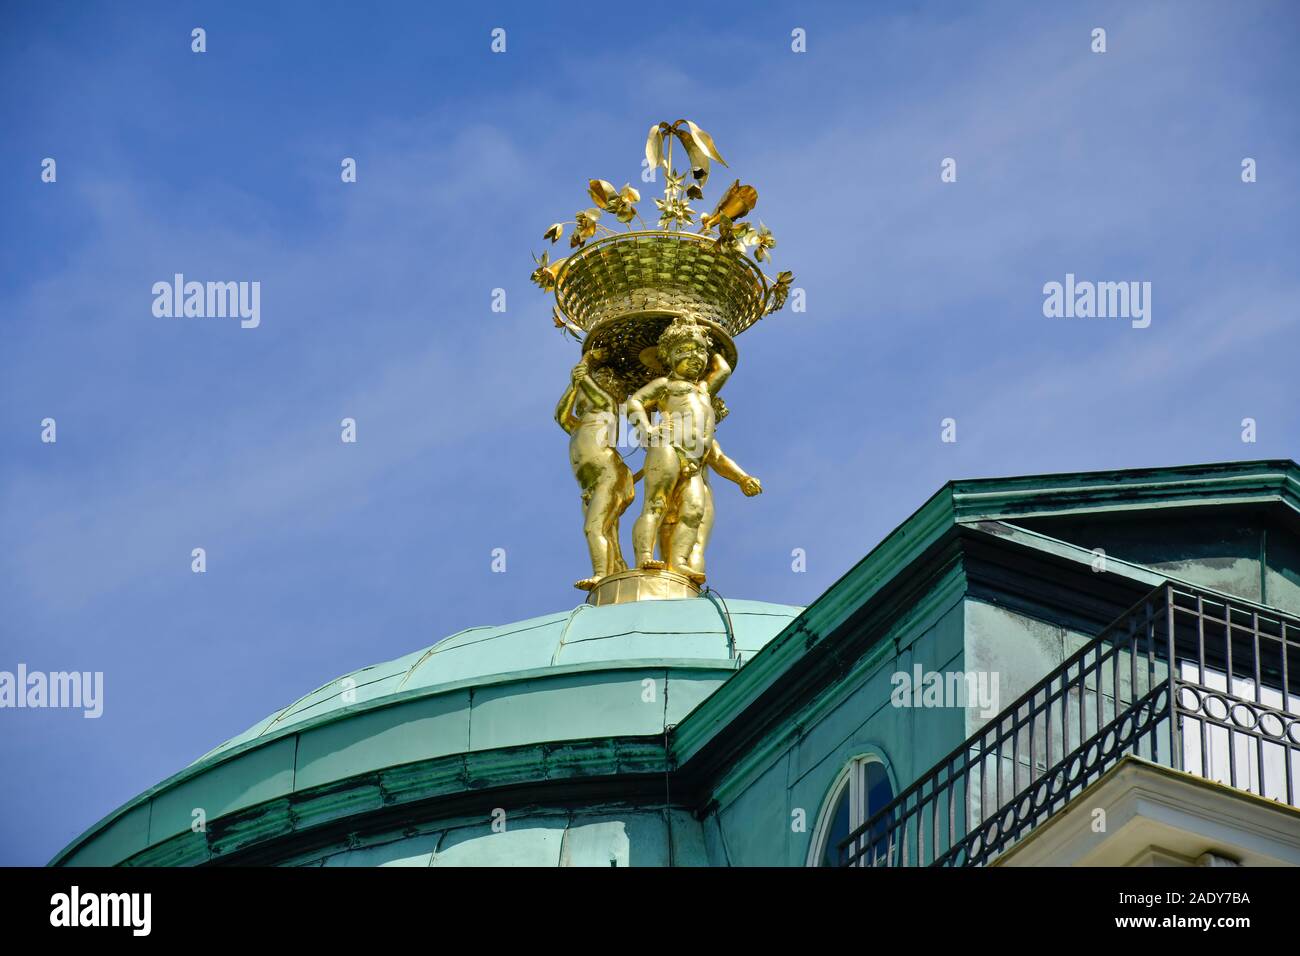 Dachfigur, Belvedere im Schlossgarten Charlottenburg, Spandauer Damm, Charlottenburg, Berlin, Deutschland Stock Photo